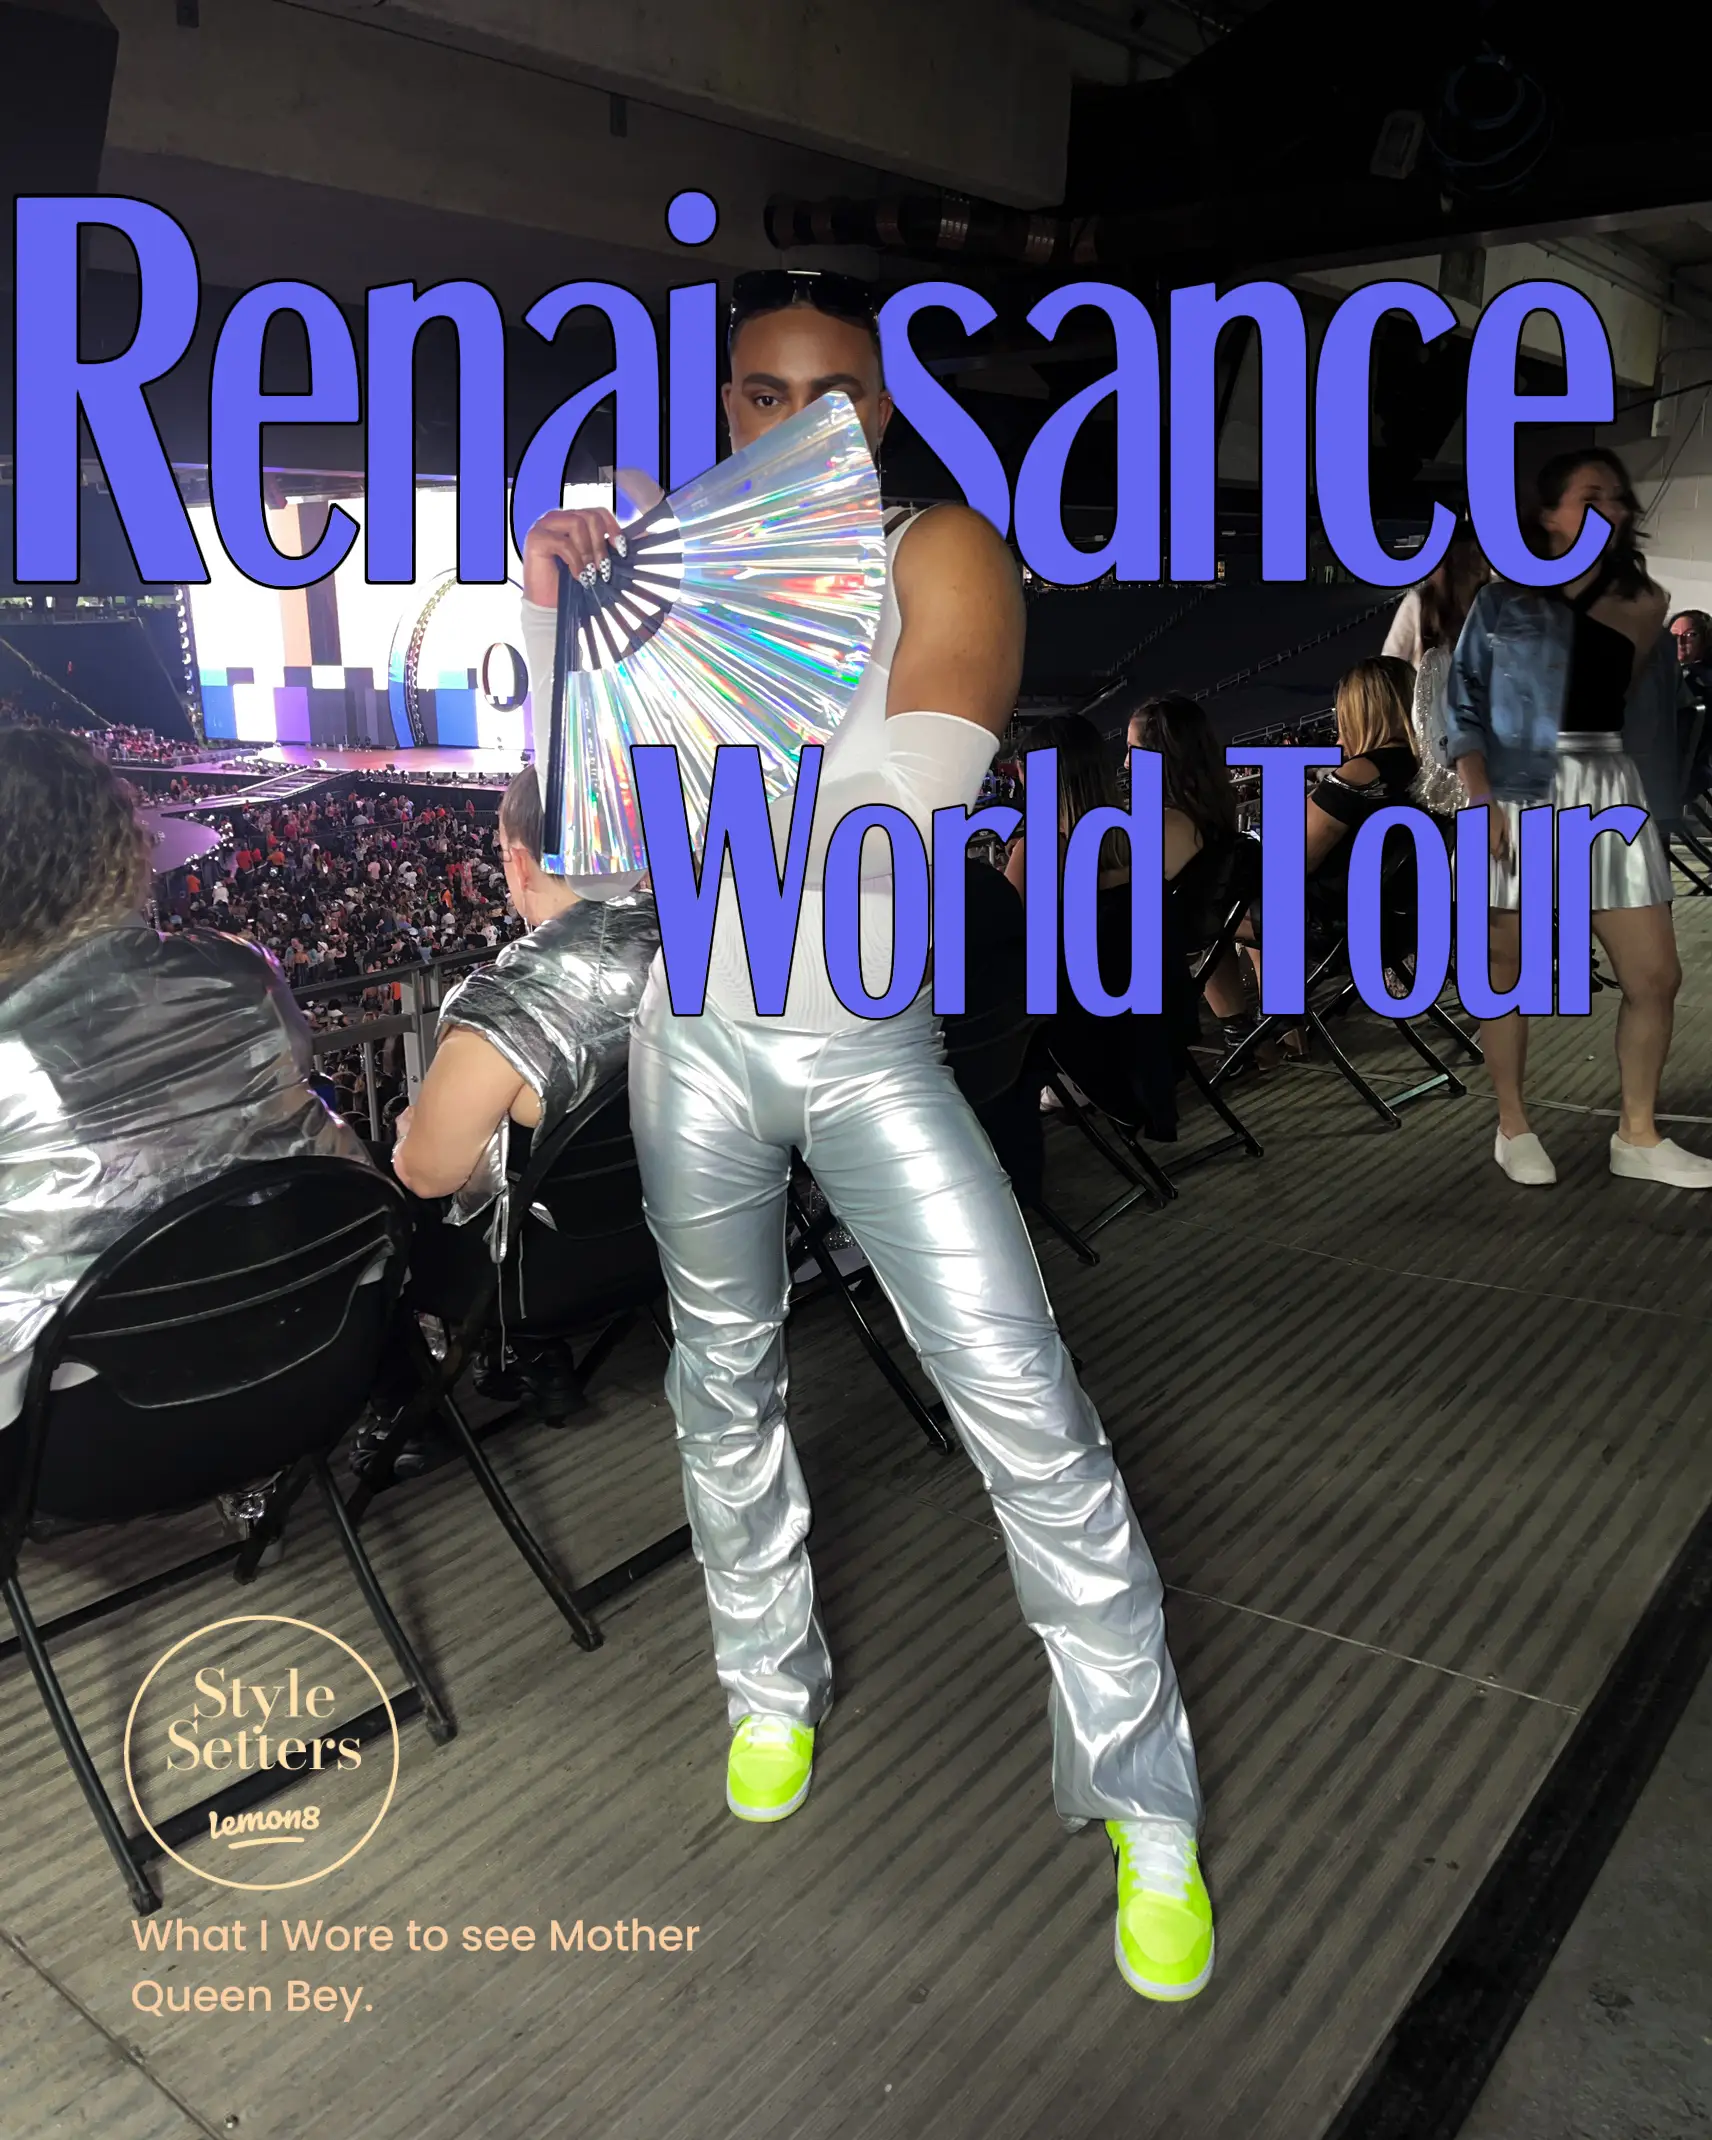 Renaissance World Tour Outfit Inspo's images